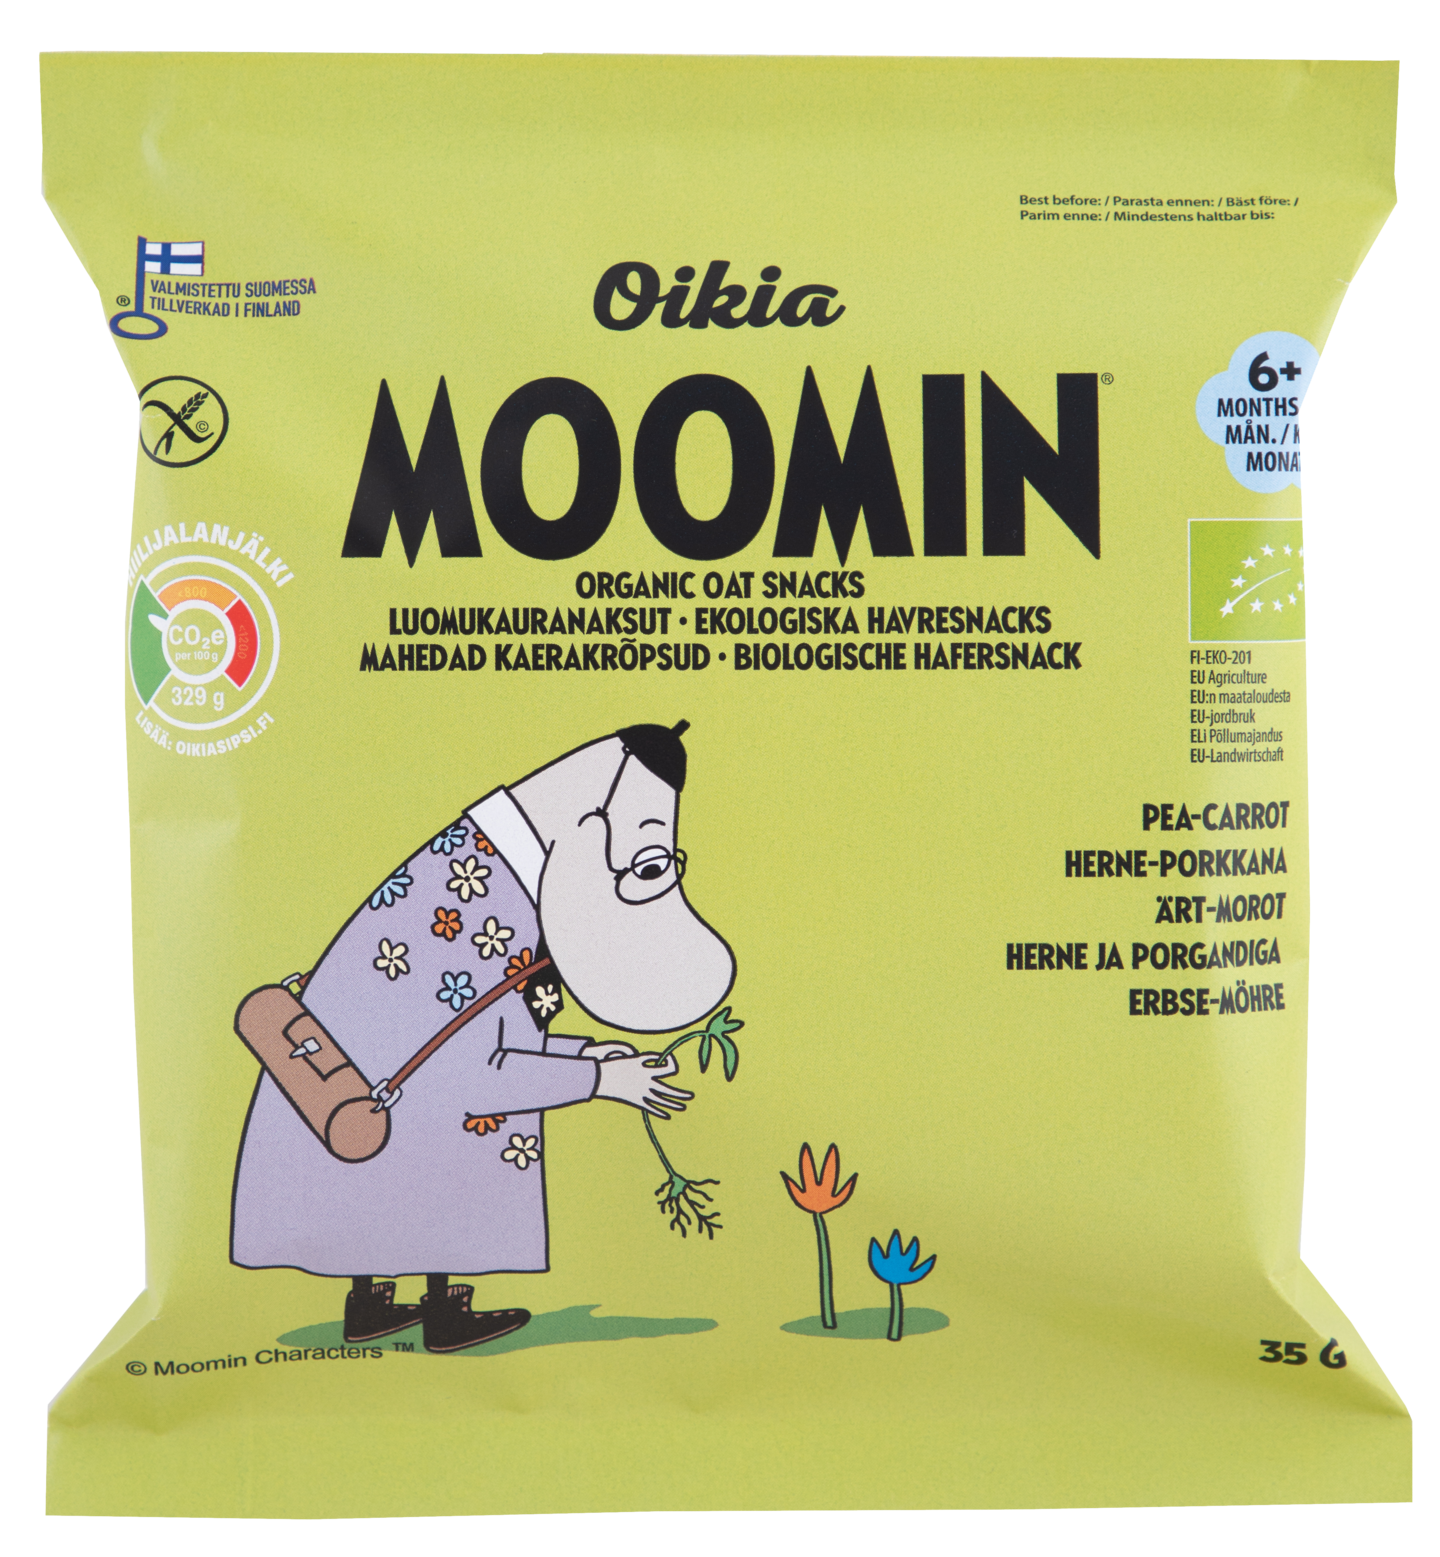 Oikia Moomin Luomukauranaksu herne-porkkana 35g 6+ kk